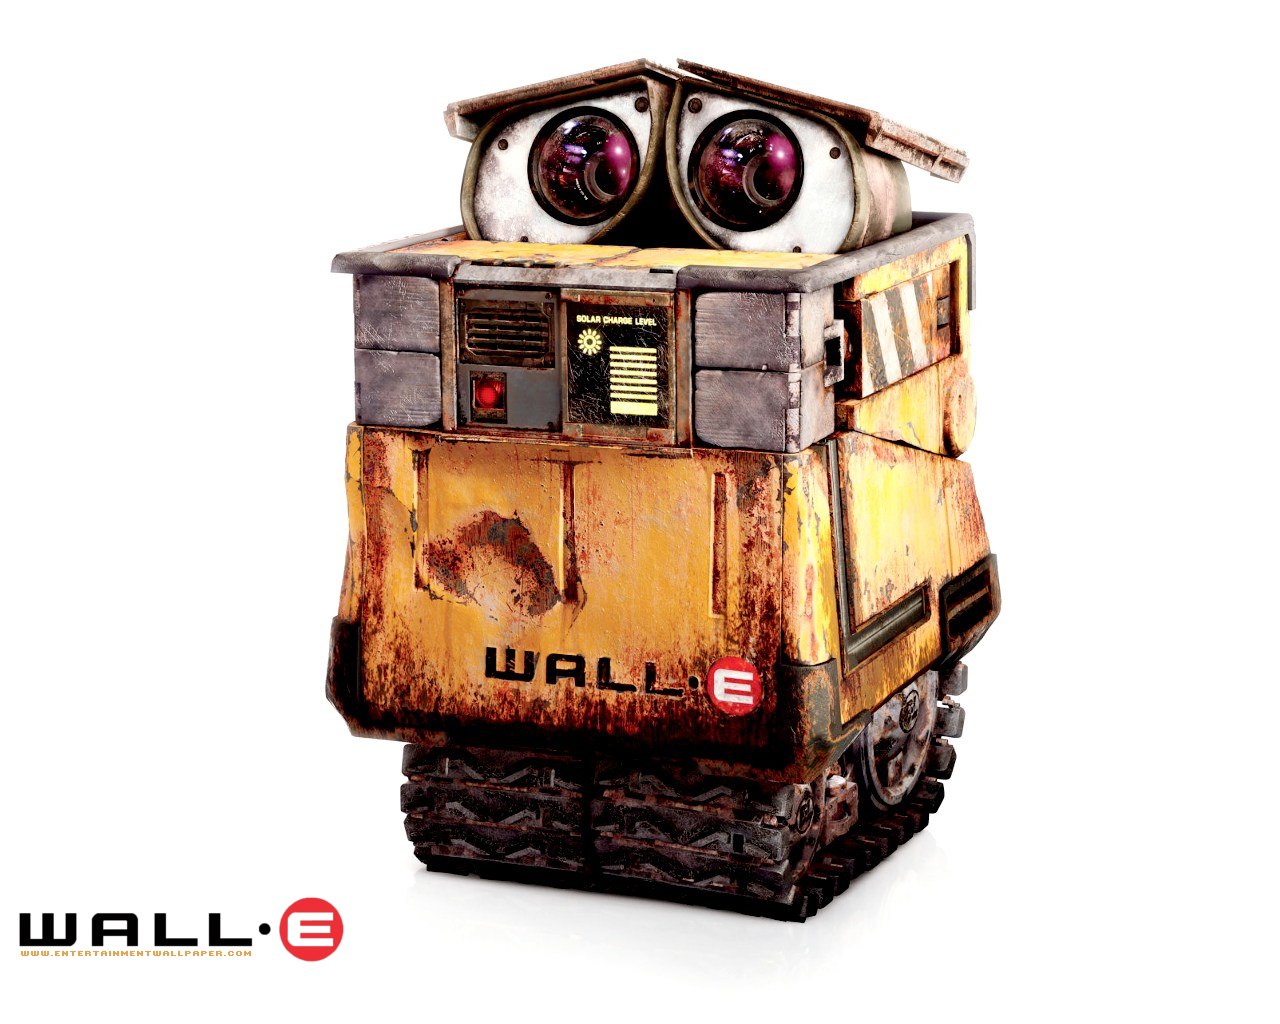 壁纸1280x1024星际总动员 WALL E 迪士尼和皮克斯出品的动画片 壁纸4壁纸 《星际总动员》(WA壁纸 《星际总动员》(WA图片 《星际总动员》(WA素材 影视壁纸 影视图库 影视图片素材桌面壁纸